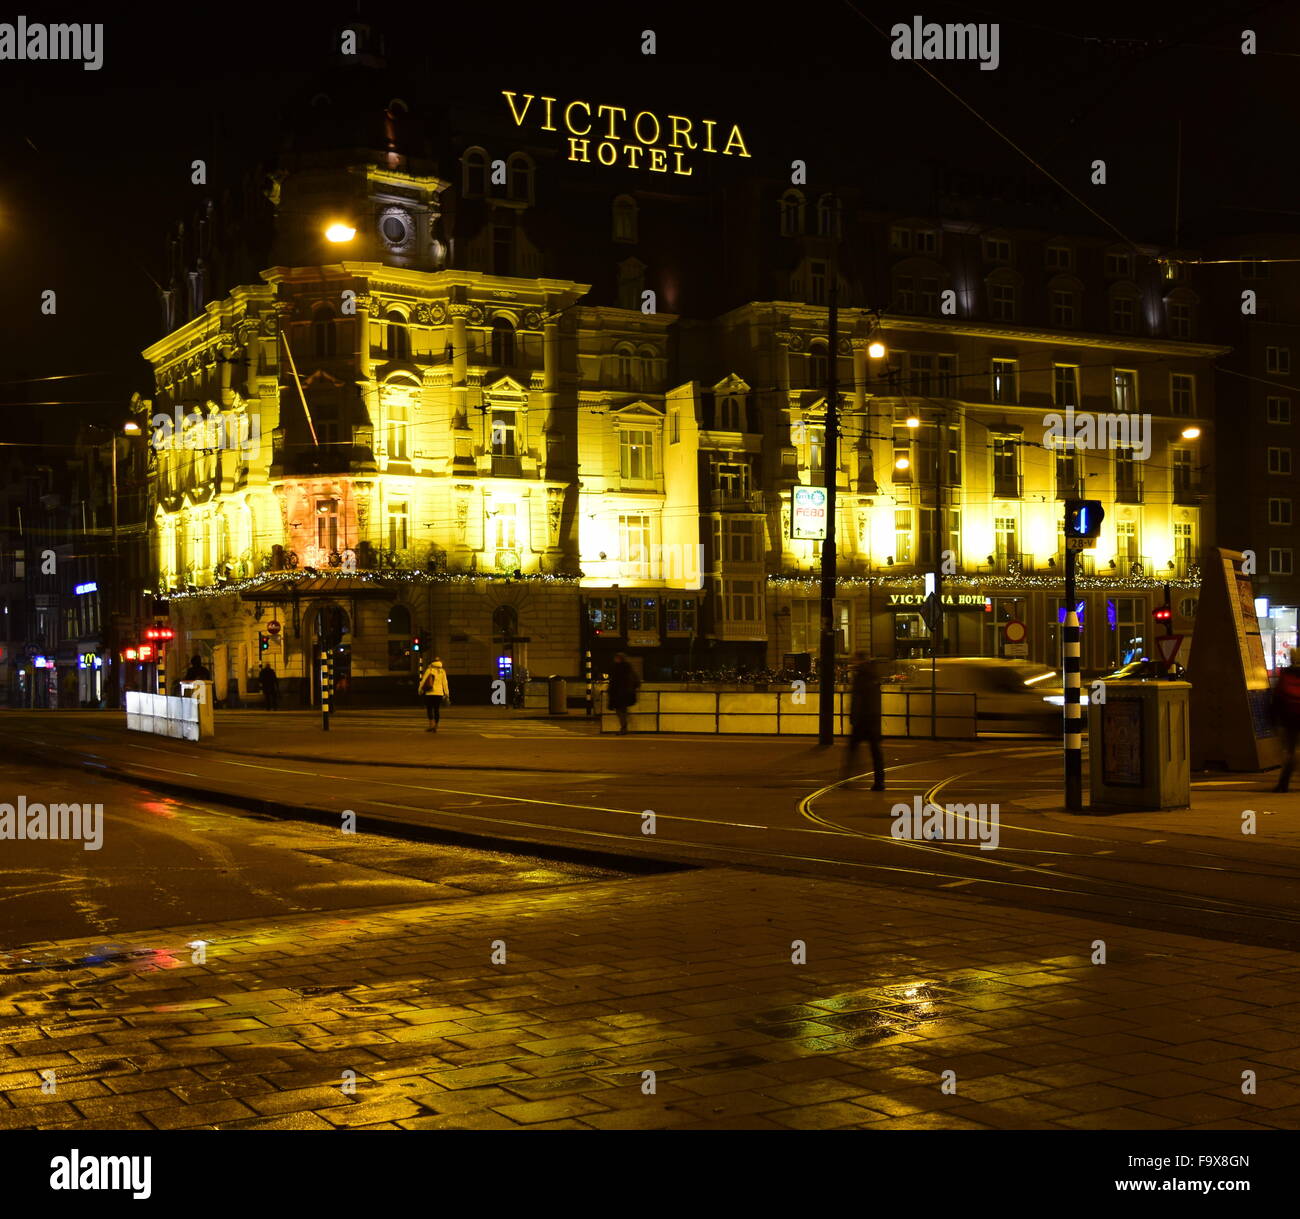 El encantador hotel Victoria en el centro de Amsterdam, como se ve en la oscuridad de una noche clara. Foto de stock